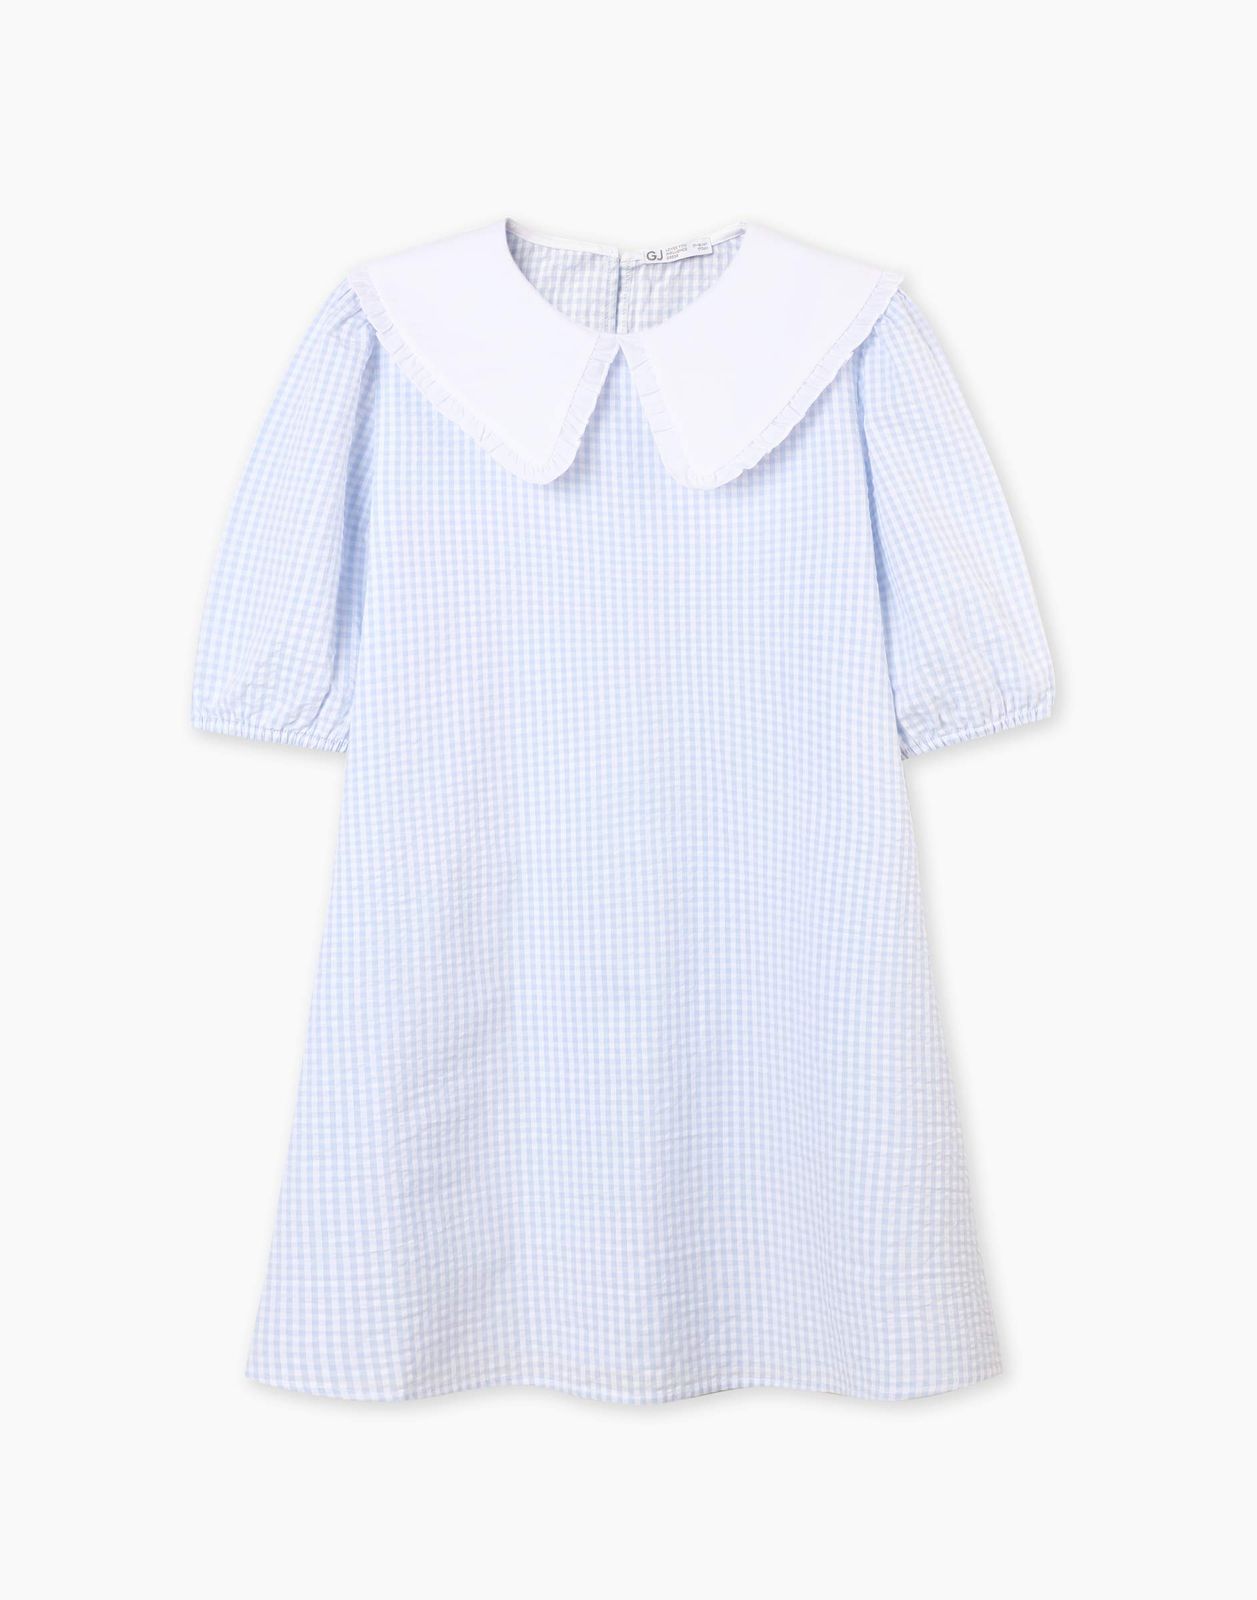 Платье детское Gloria Jeans GDR028214, голубой/белый, 134